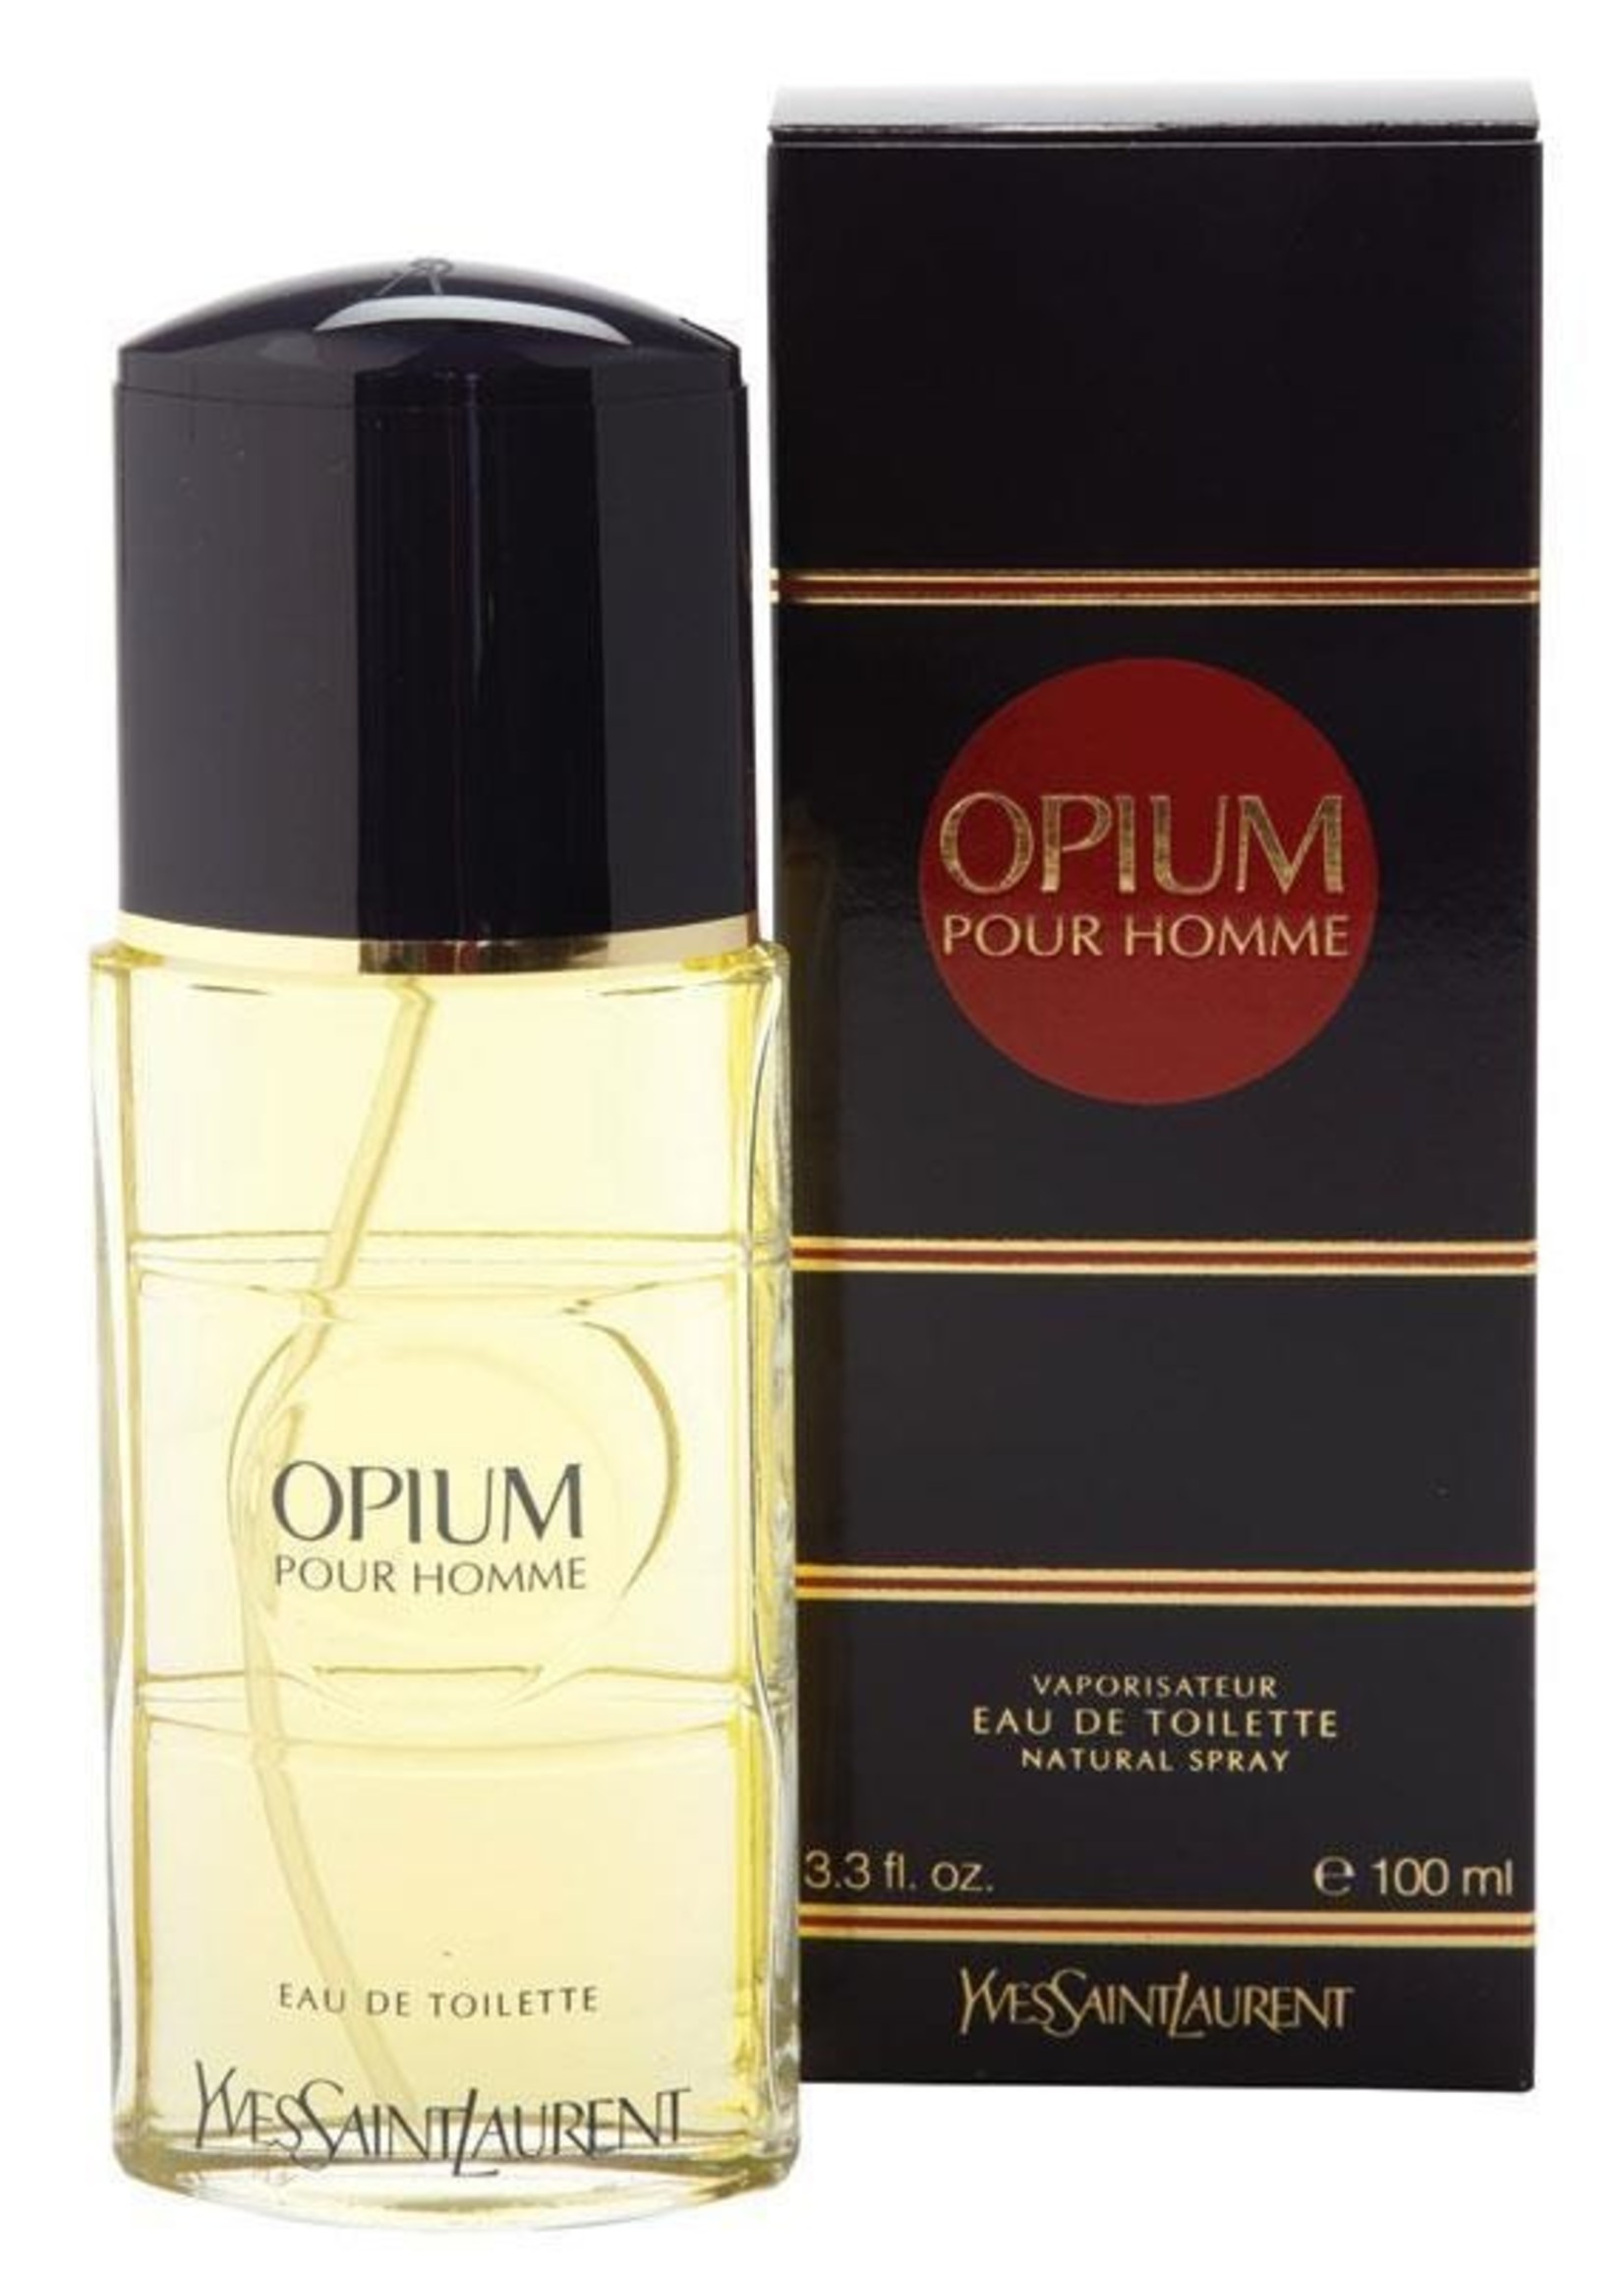 Opium pour homme. Туалетная вода Yves Saint Laurent Opium. Туалетная вода Yves Saint Laurent "Opium", 100 ml. Мужские Yves Saint Laurent Opium pour homme. Духи Yves Saint Laurent мужские Opium.